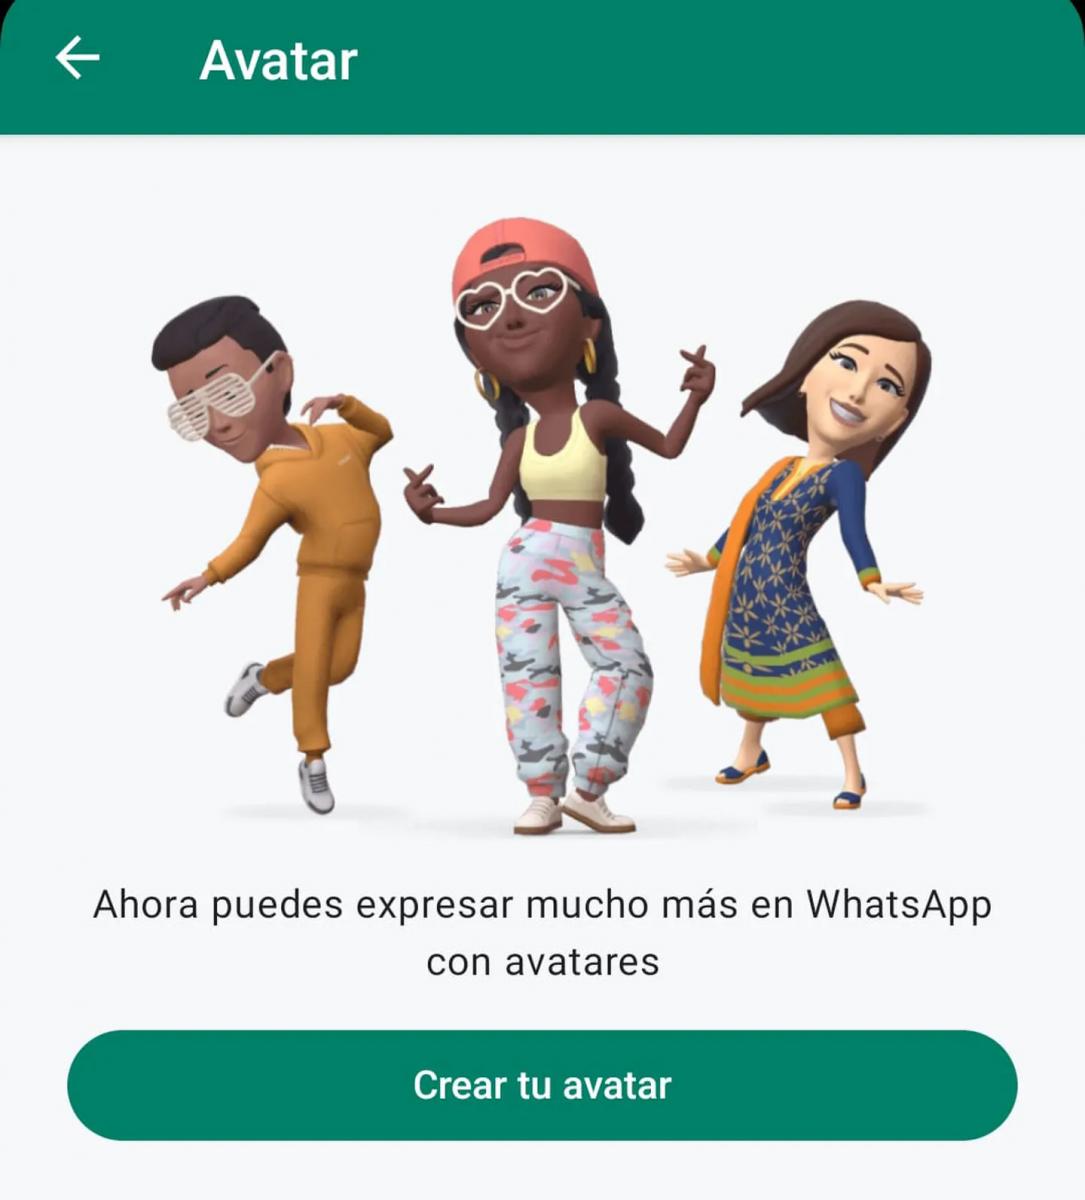 WhatsApp lanzó los avatares personalizados con stickers 3D para todos los usuarios